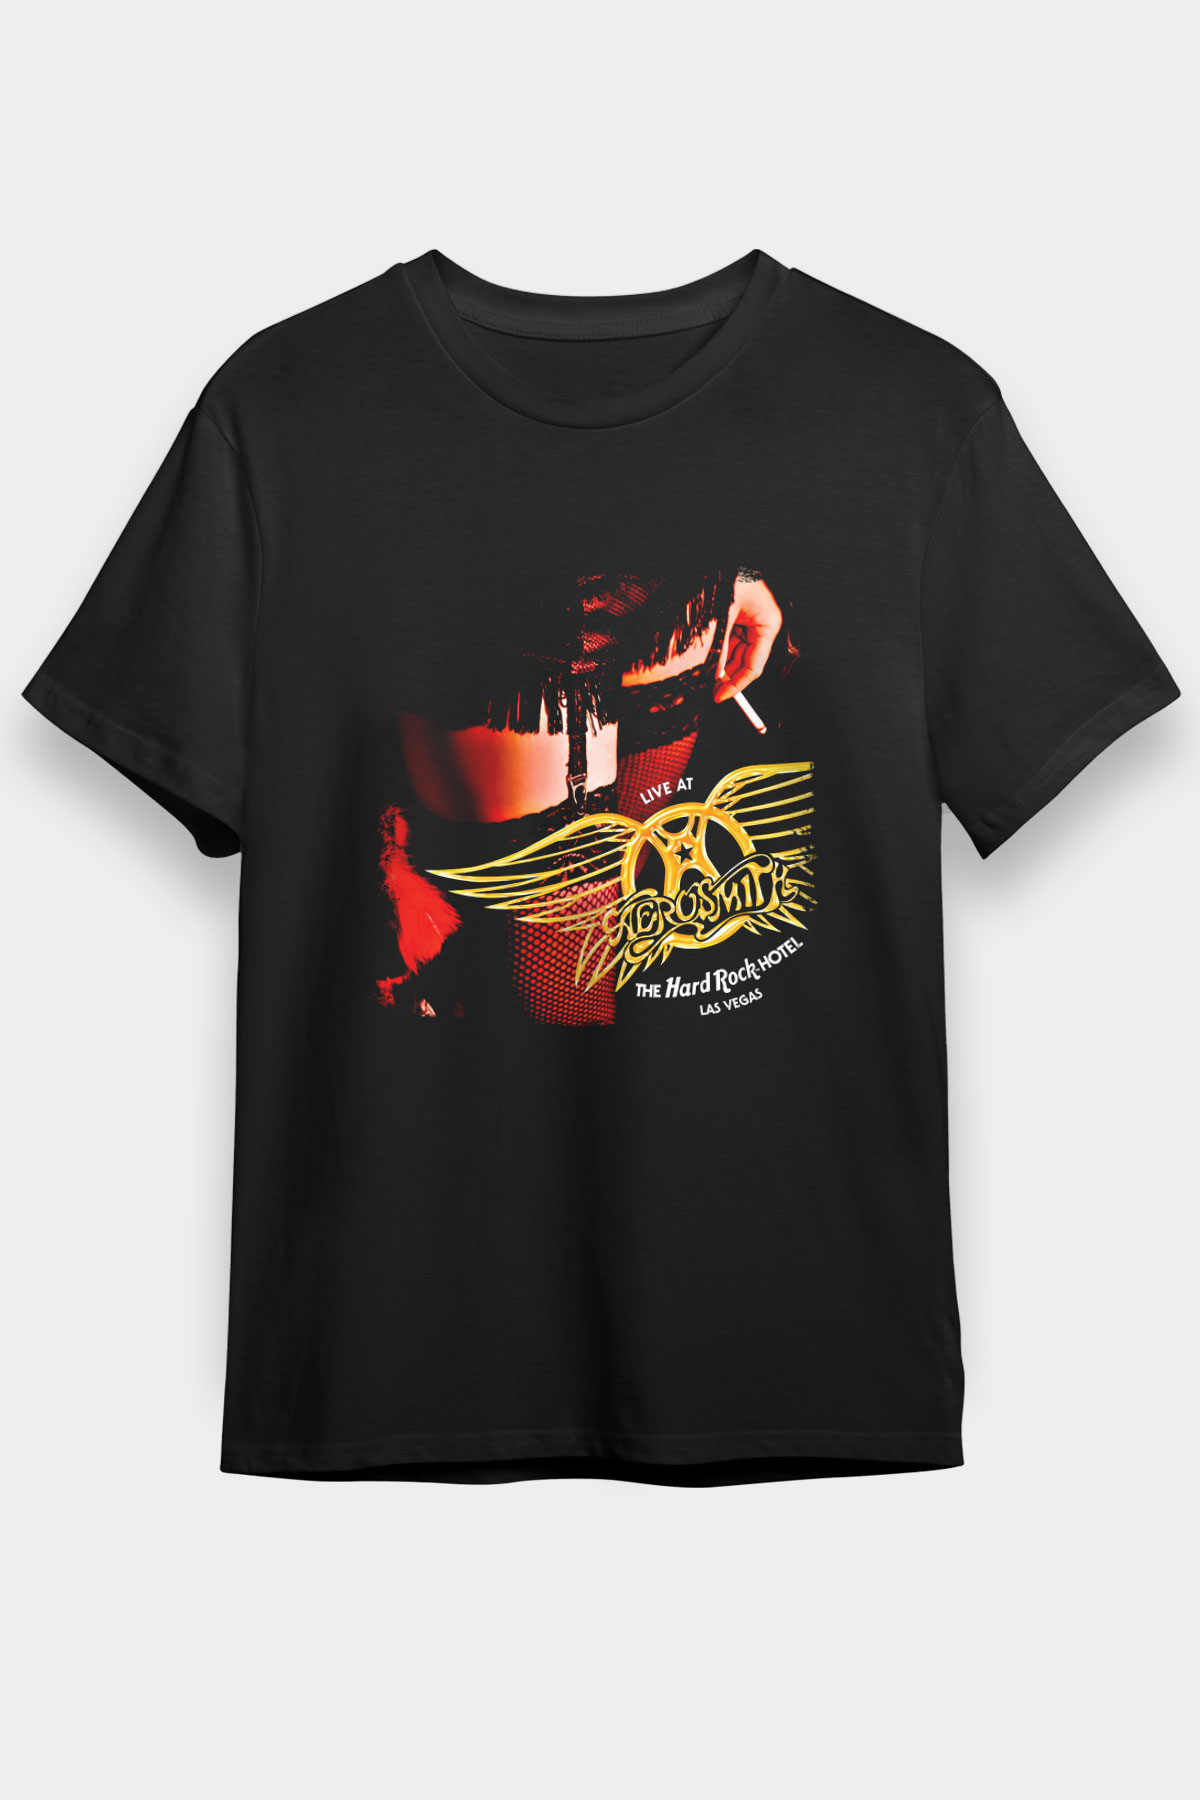 Aerosmith , Music Band ,Unisex Tshirt 19